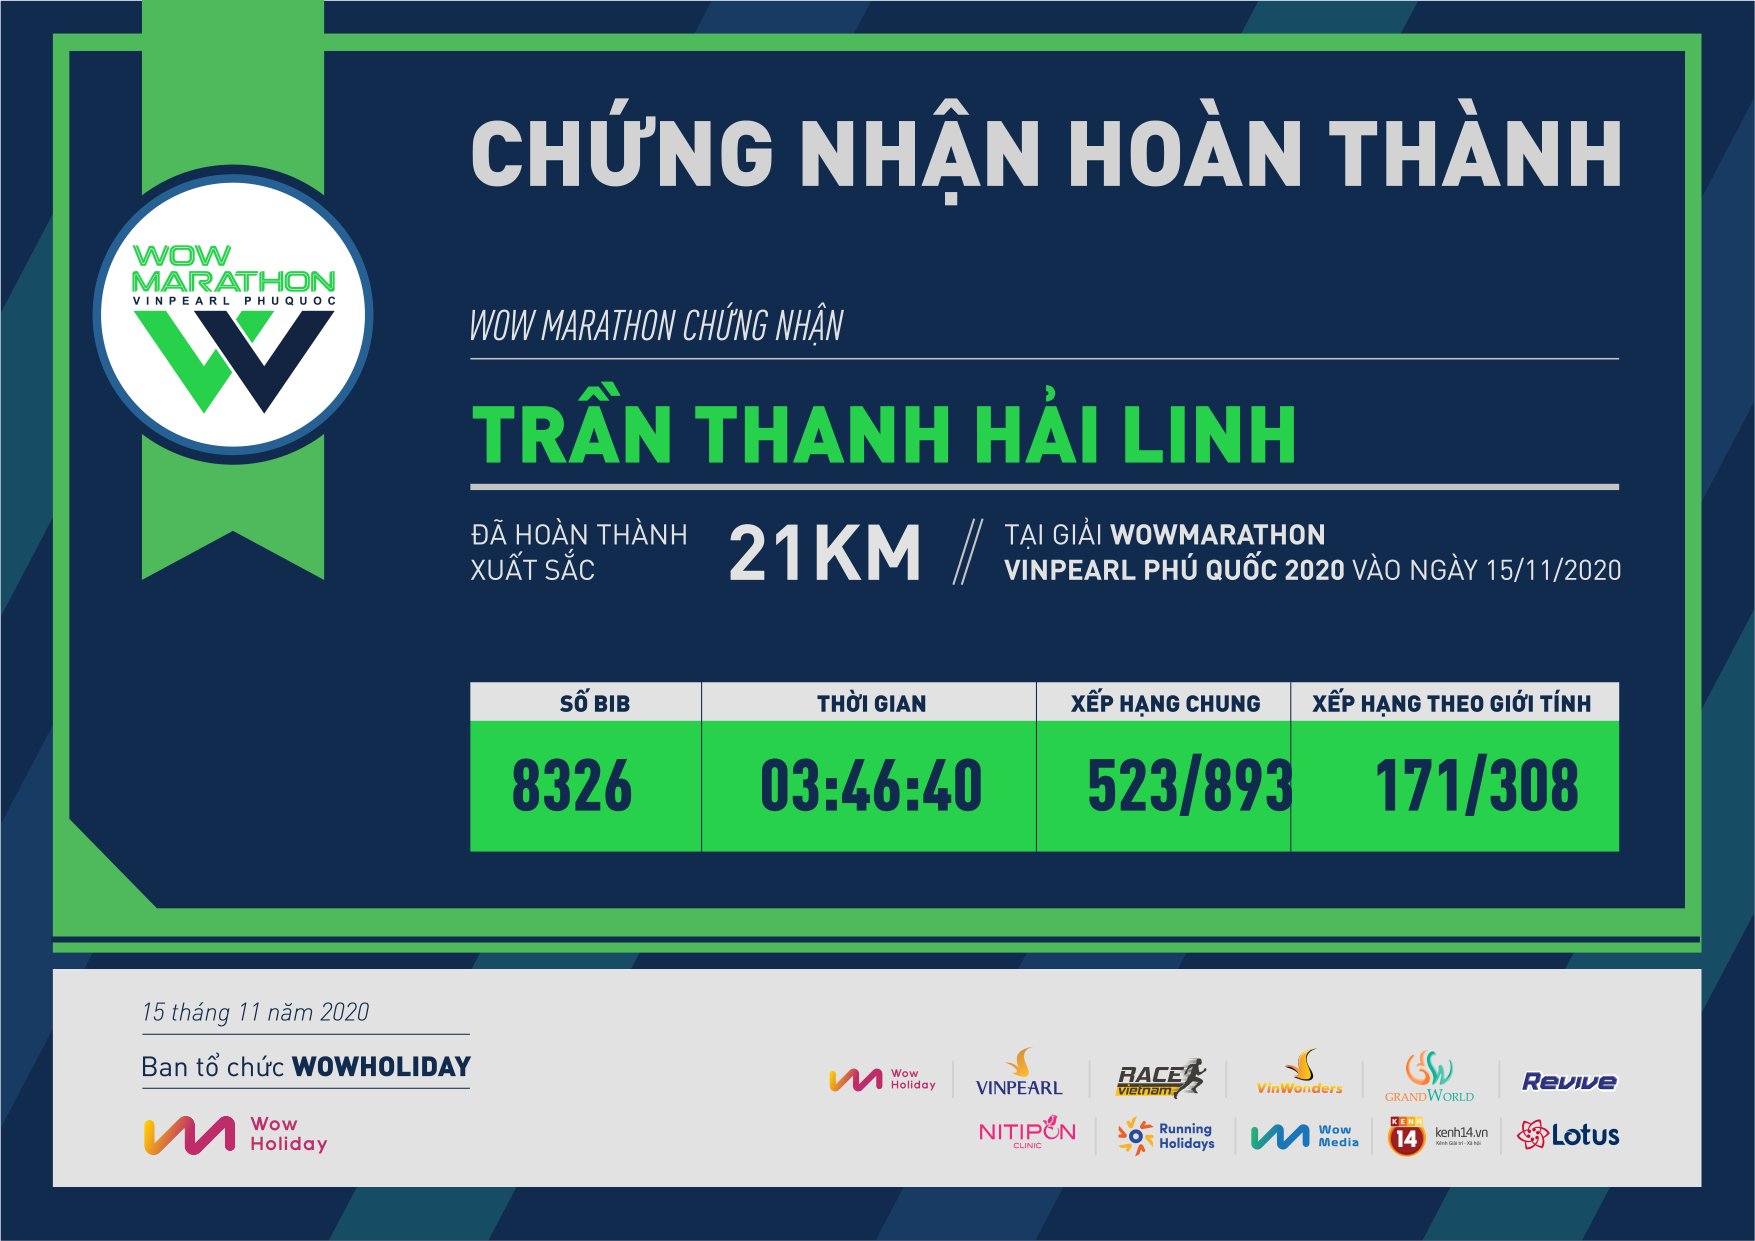 8326 - Trần Thanh Hải Linh